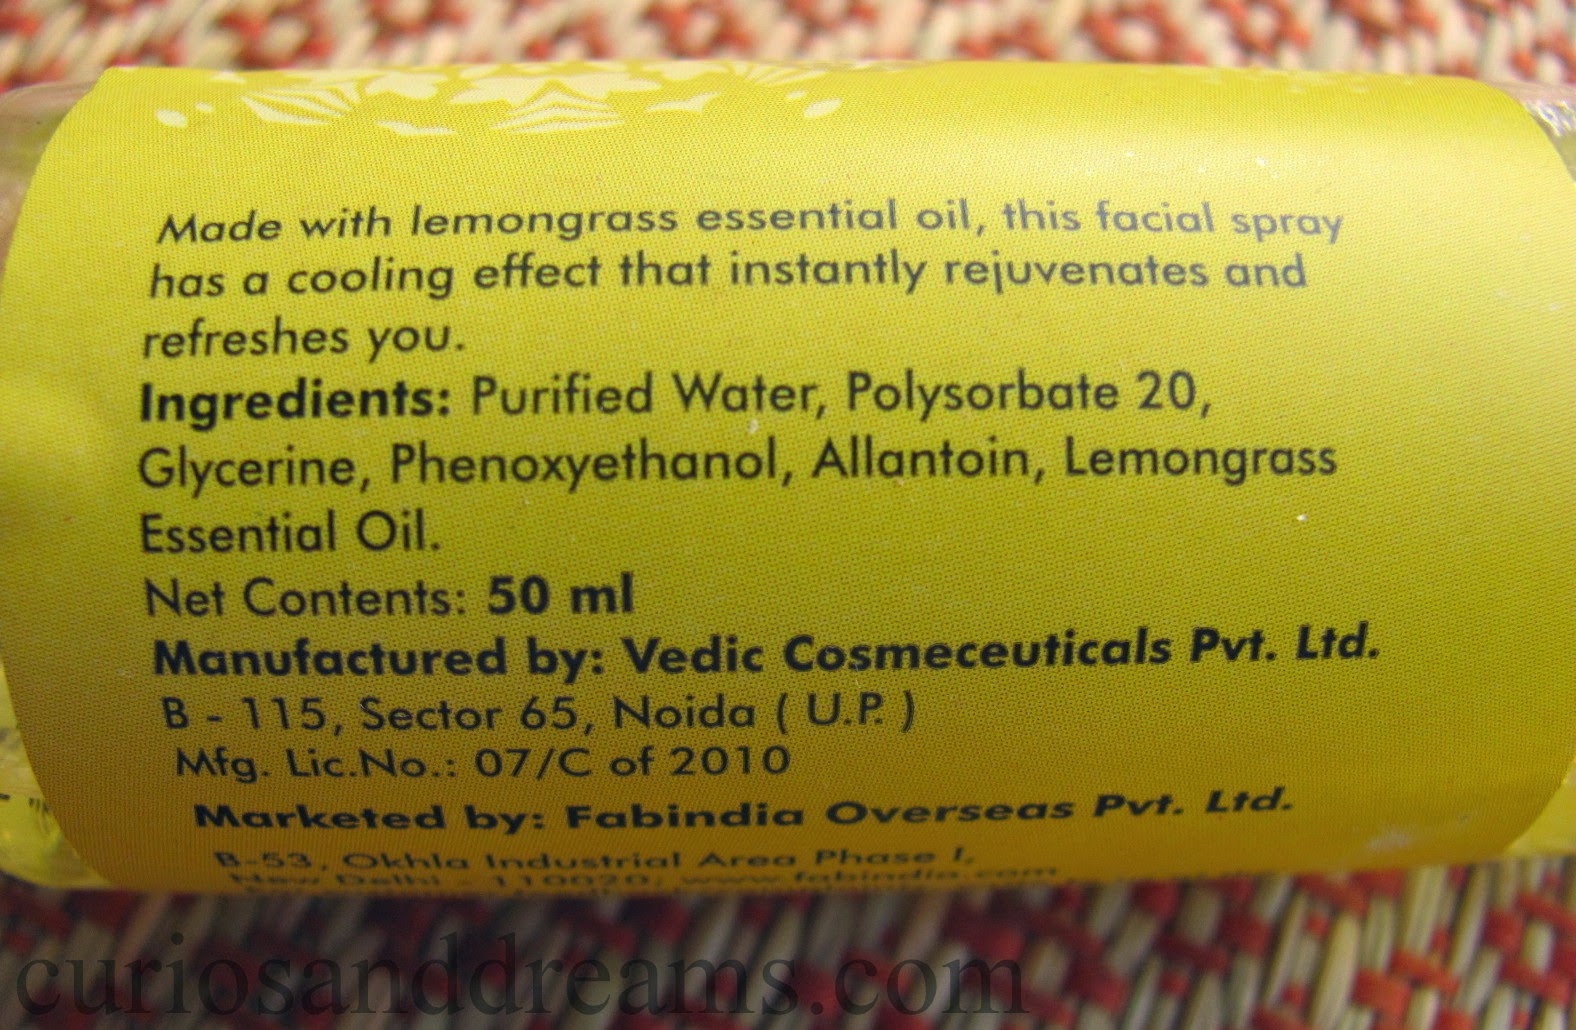 FabIndia Lemongrass Facial Spray review